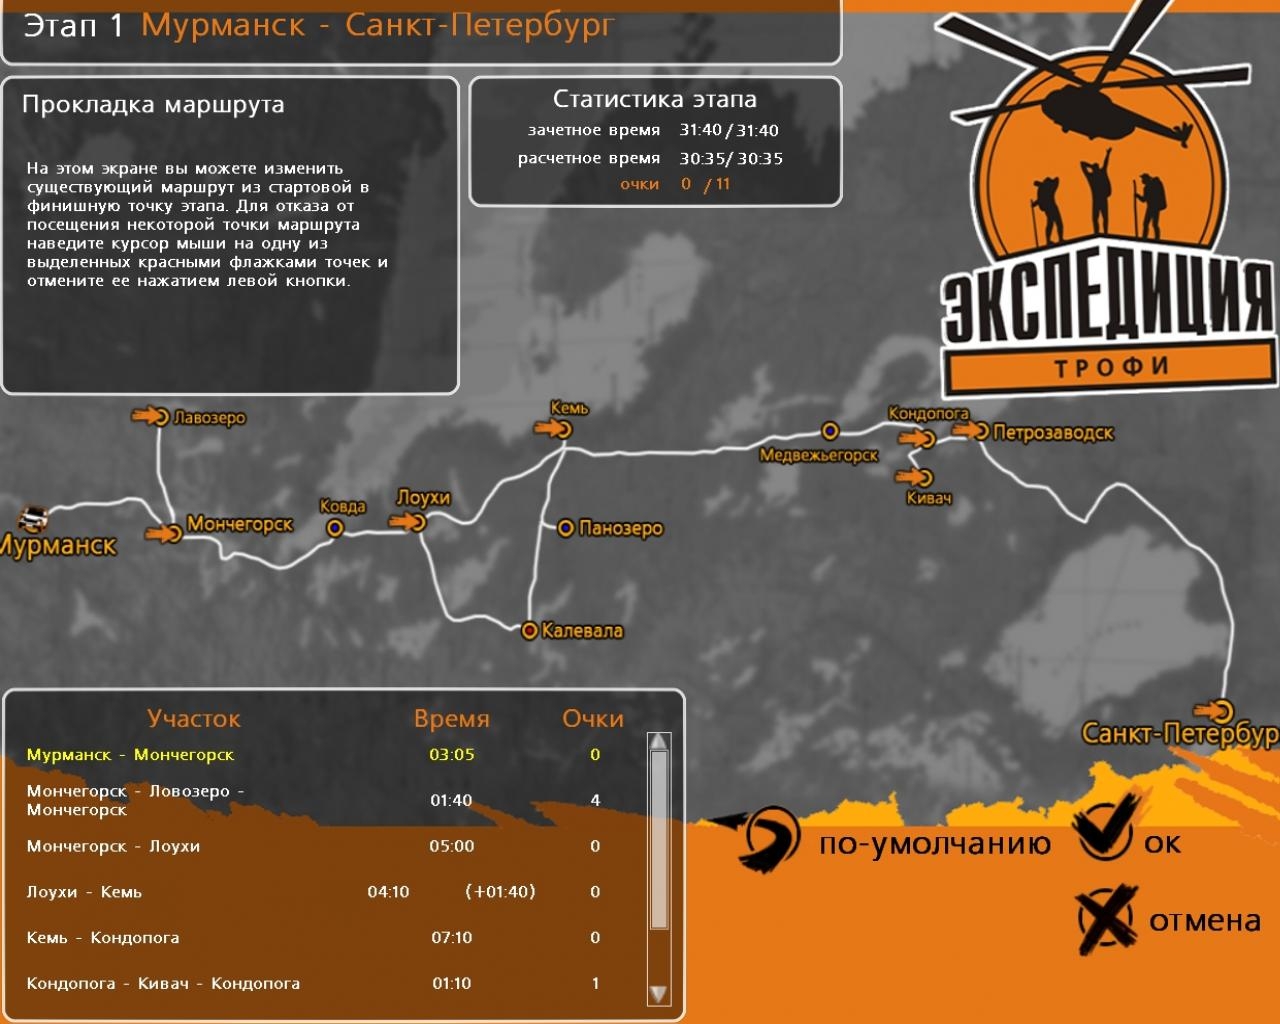 Скриншот из игры Экспедиция-Трофи: Мурманск-Владивосток под номером 24